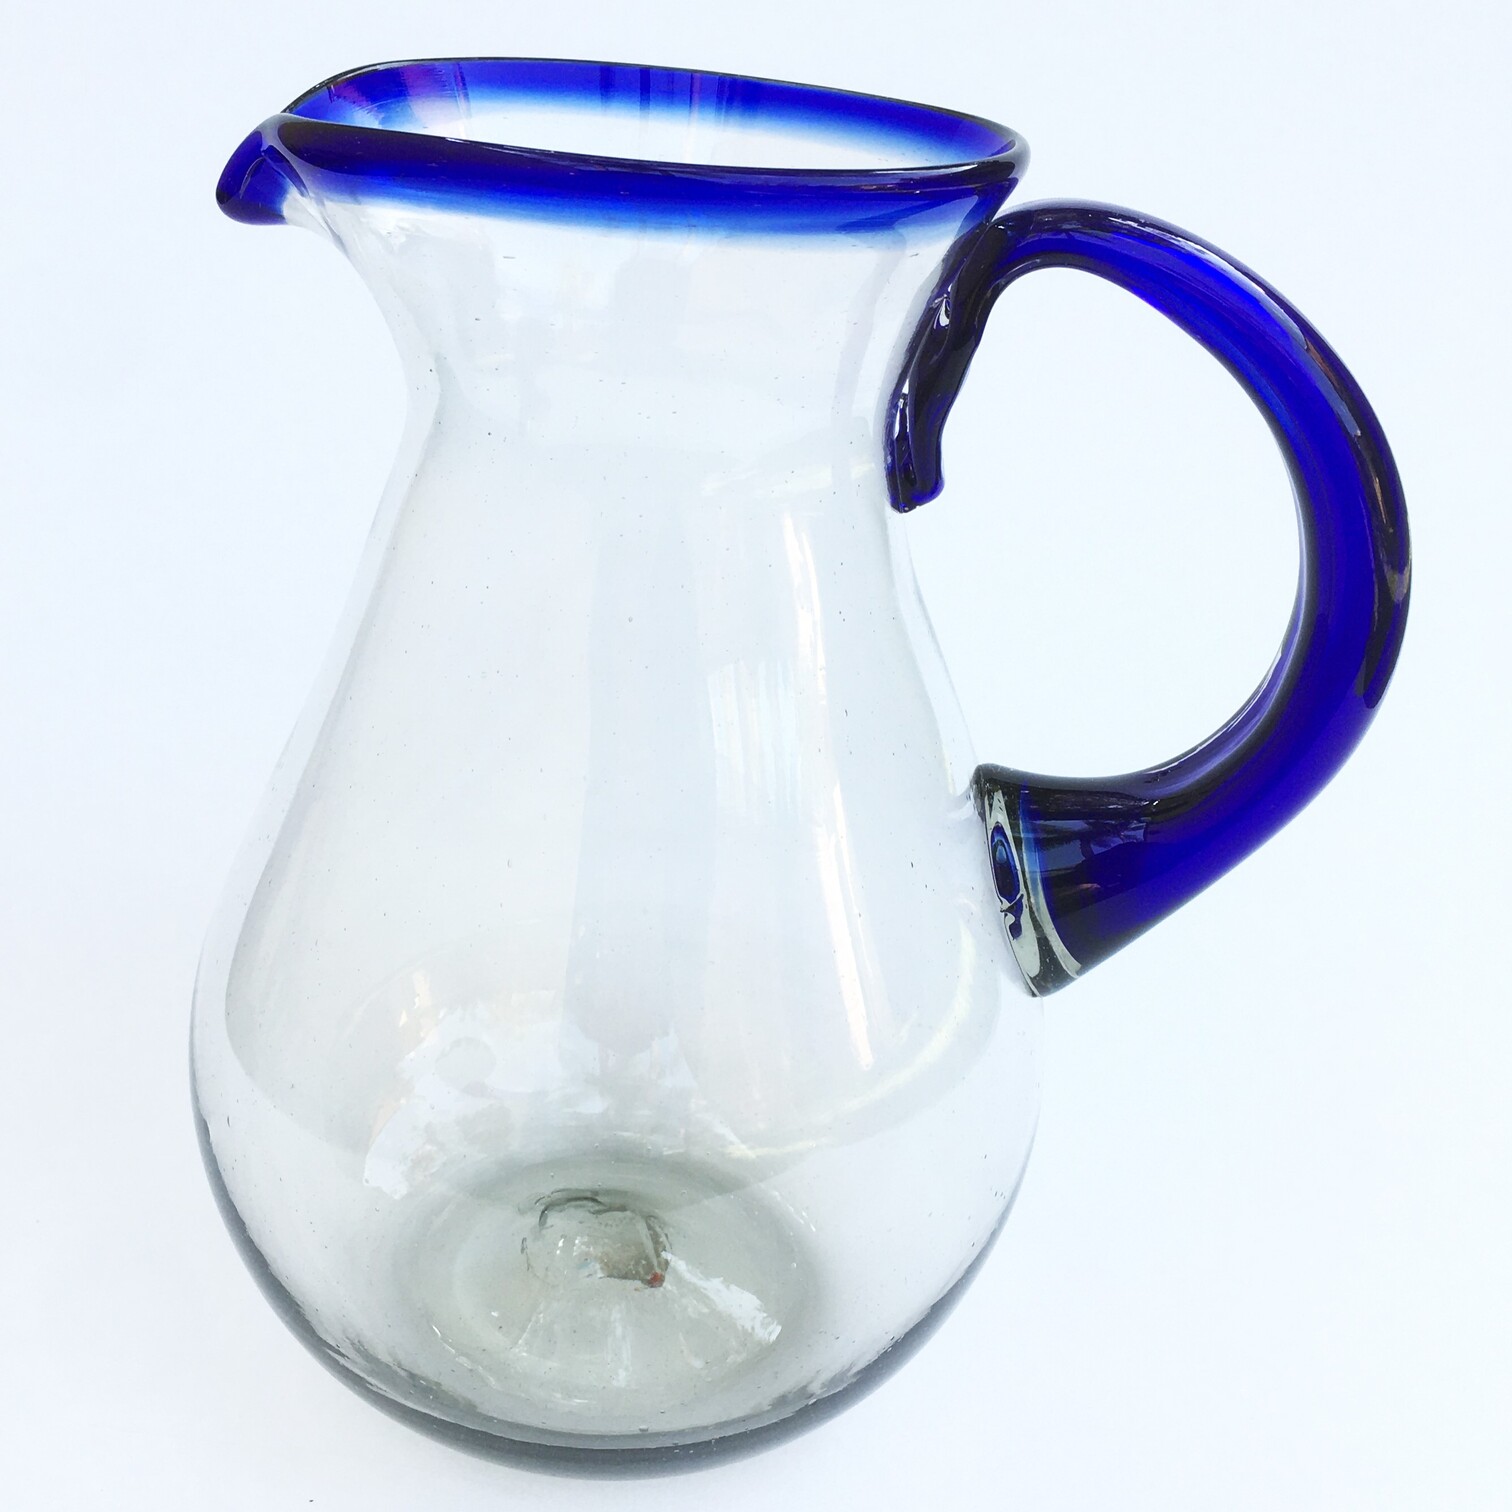 Novedades / Jarra Pera Alta con Borde Azul Cobalto / �sta cl�sica jarra es perfecta para servir cualquier tipo de bebidas refrescantes.